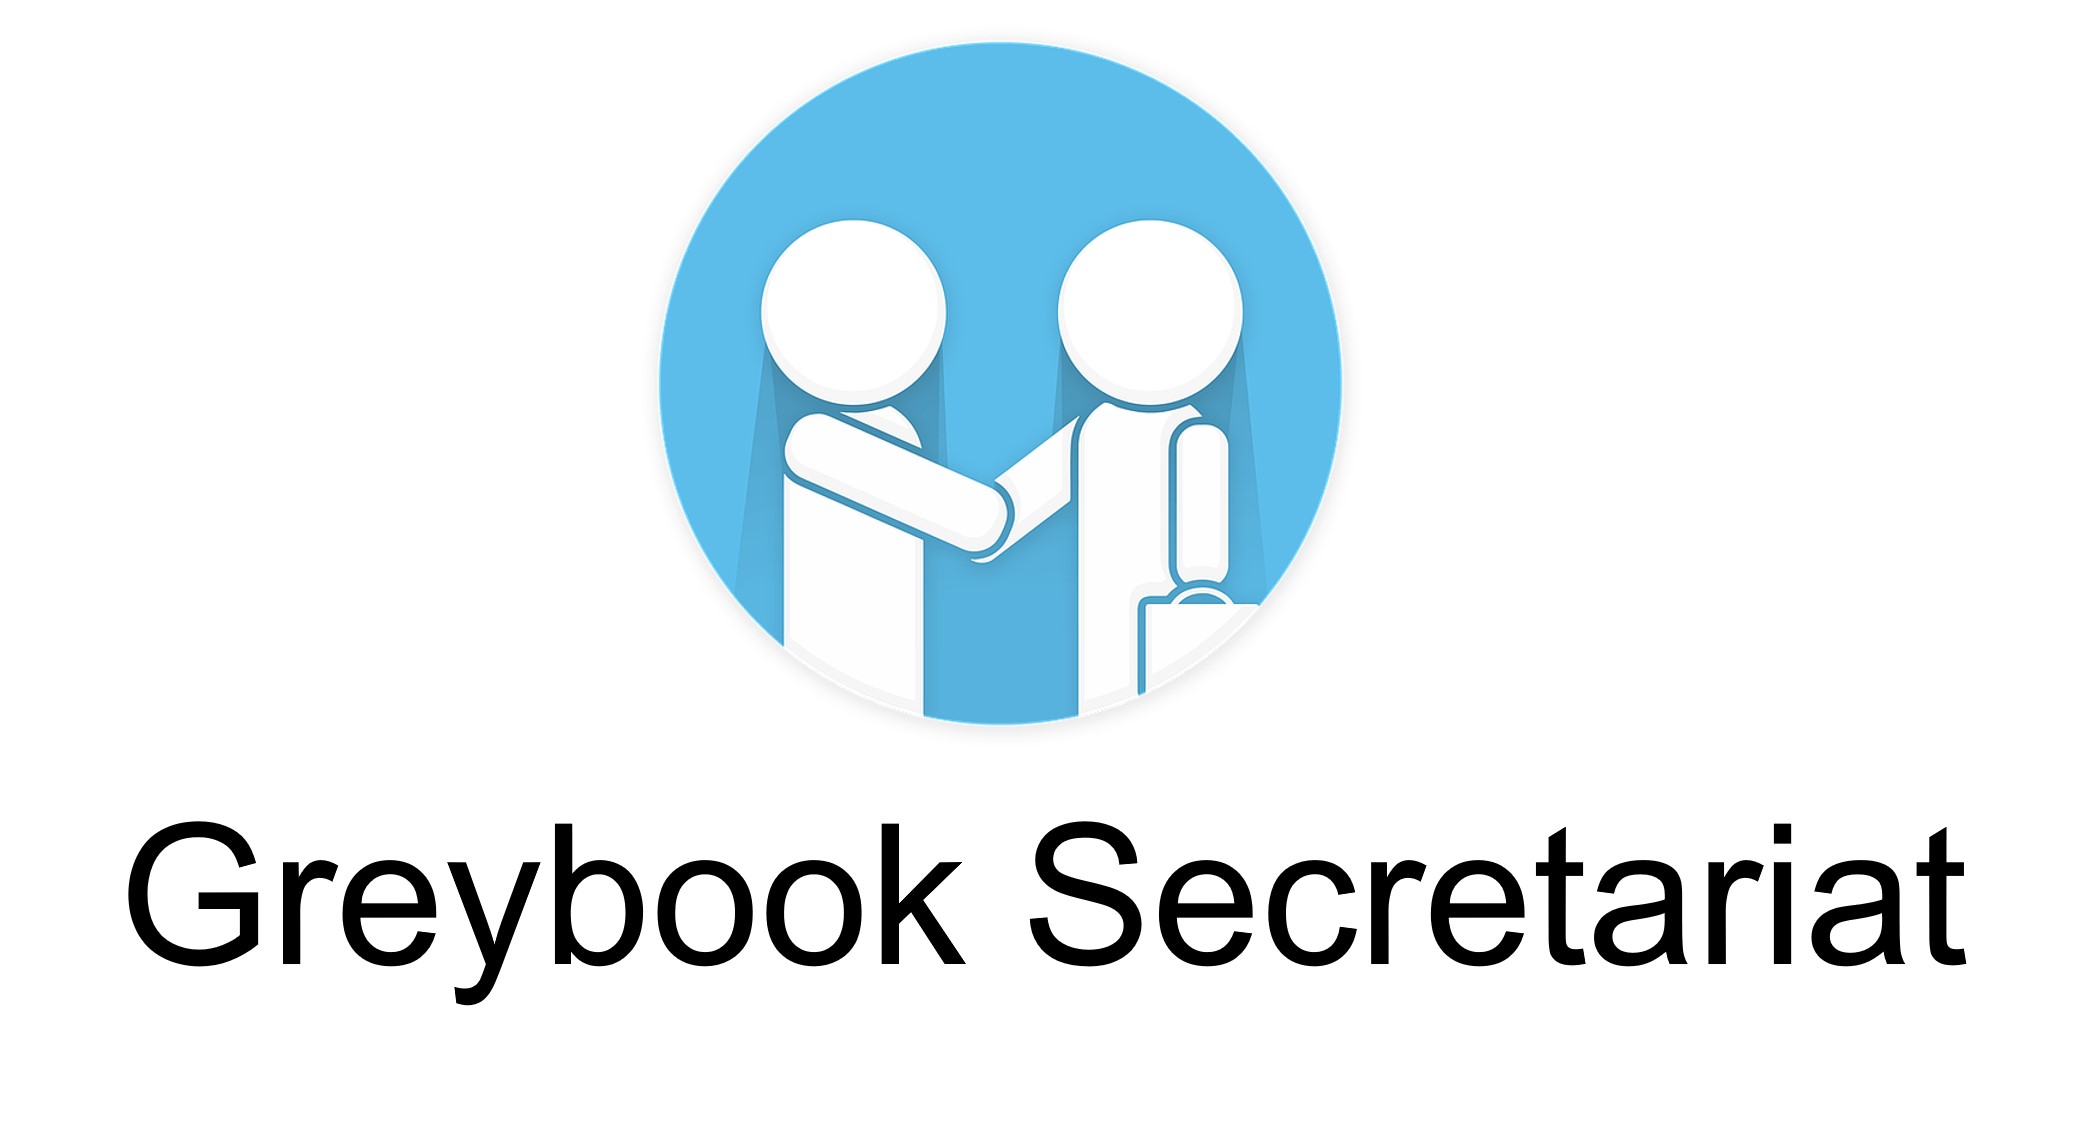 Greybook Secretariat